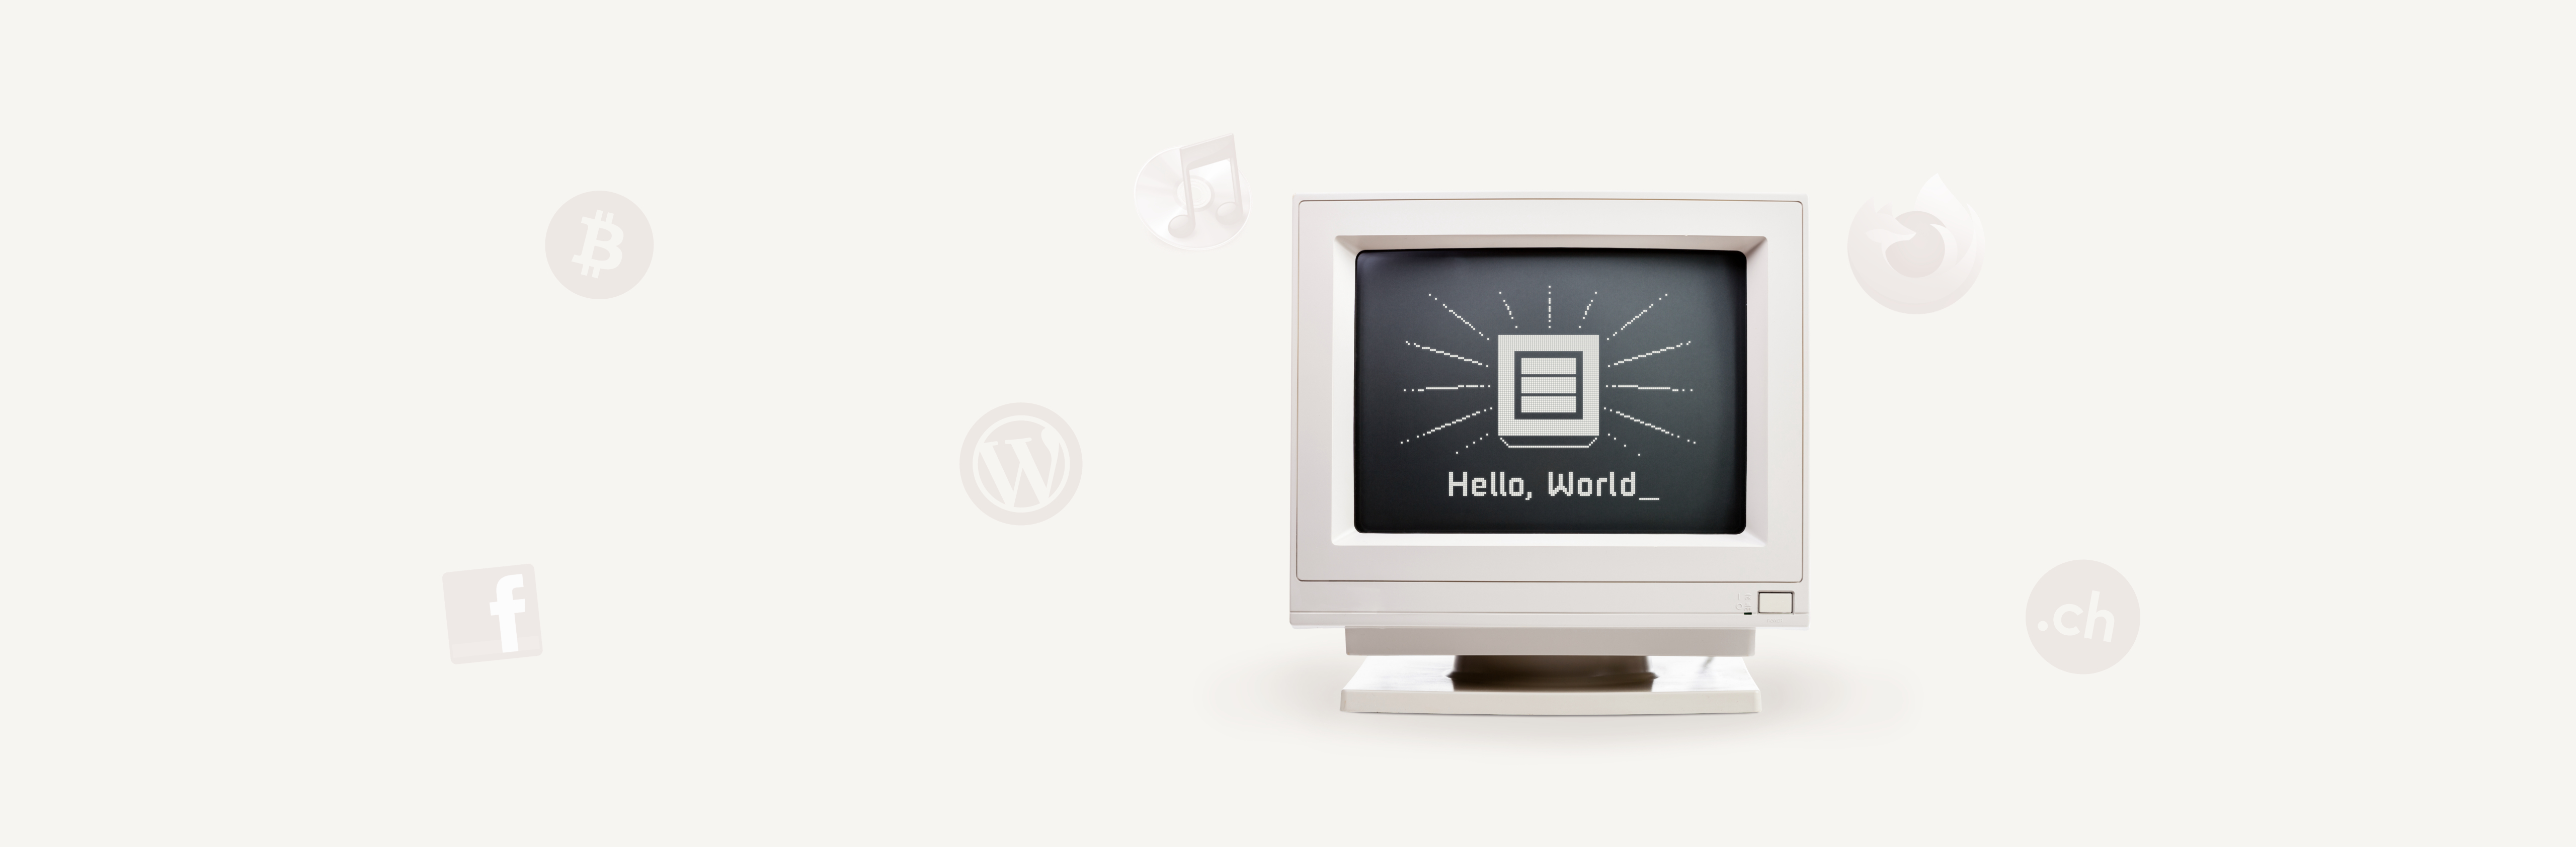 Écran d'ordinateur avec l'icône du Hostpoint et le texte "Hello, world".